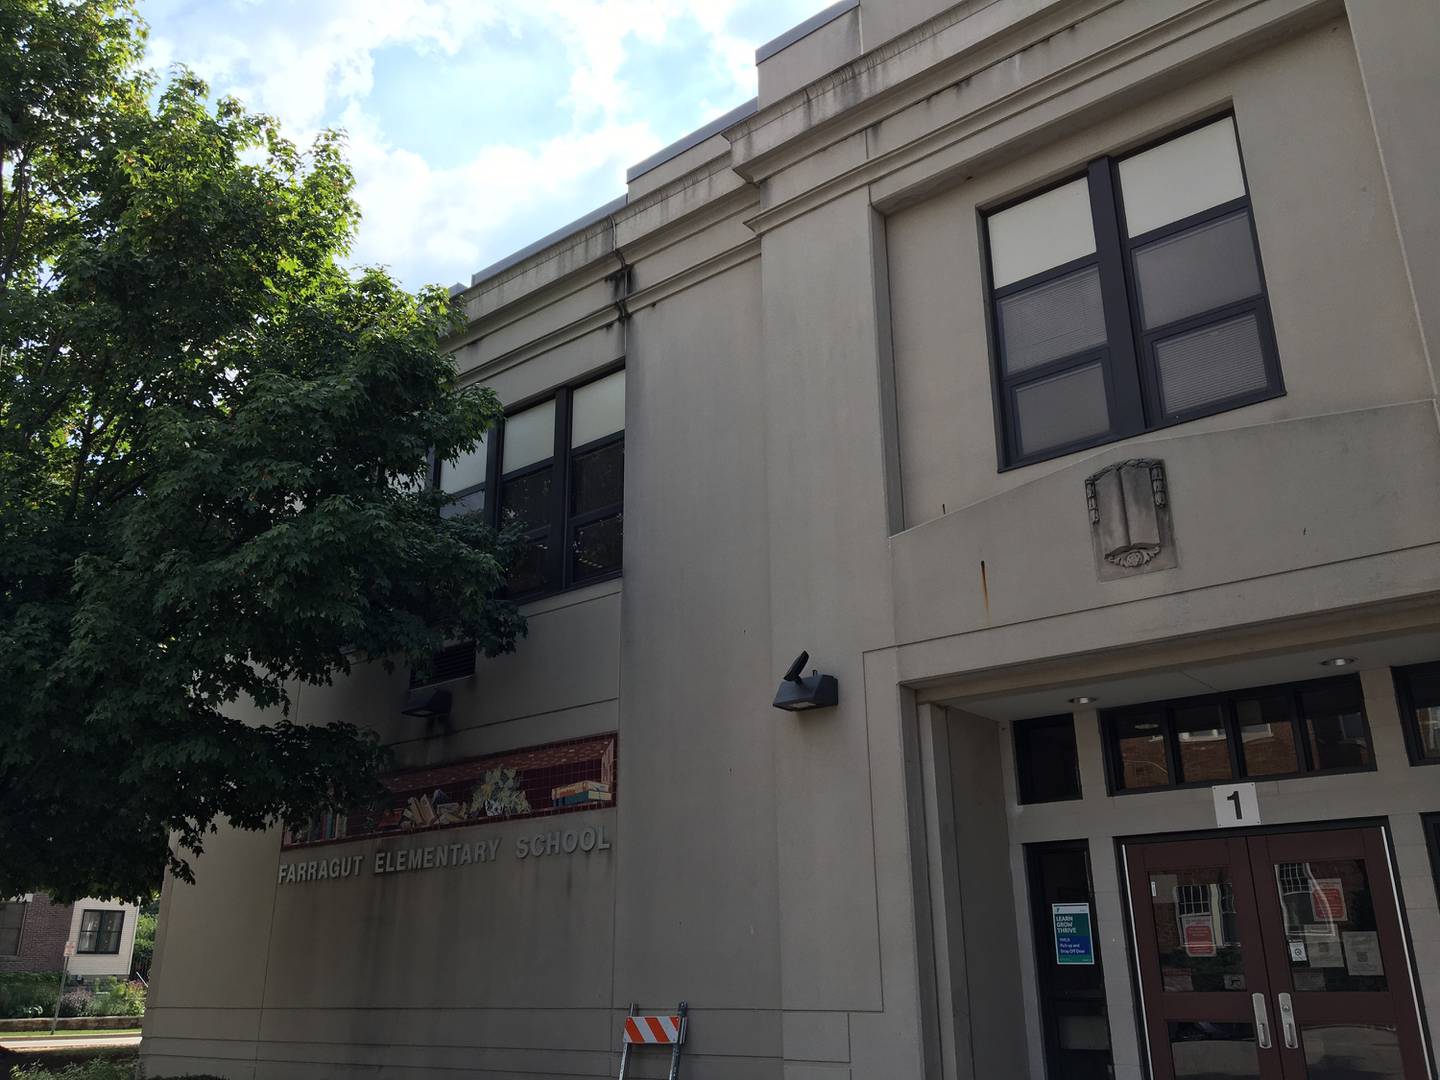 Farragut Elementary School, 701 Glenwood Avenue, Joliet, seen on Wednesday August 18, 2021. The school is part of Joliet Public Schools District 86.